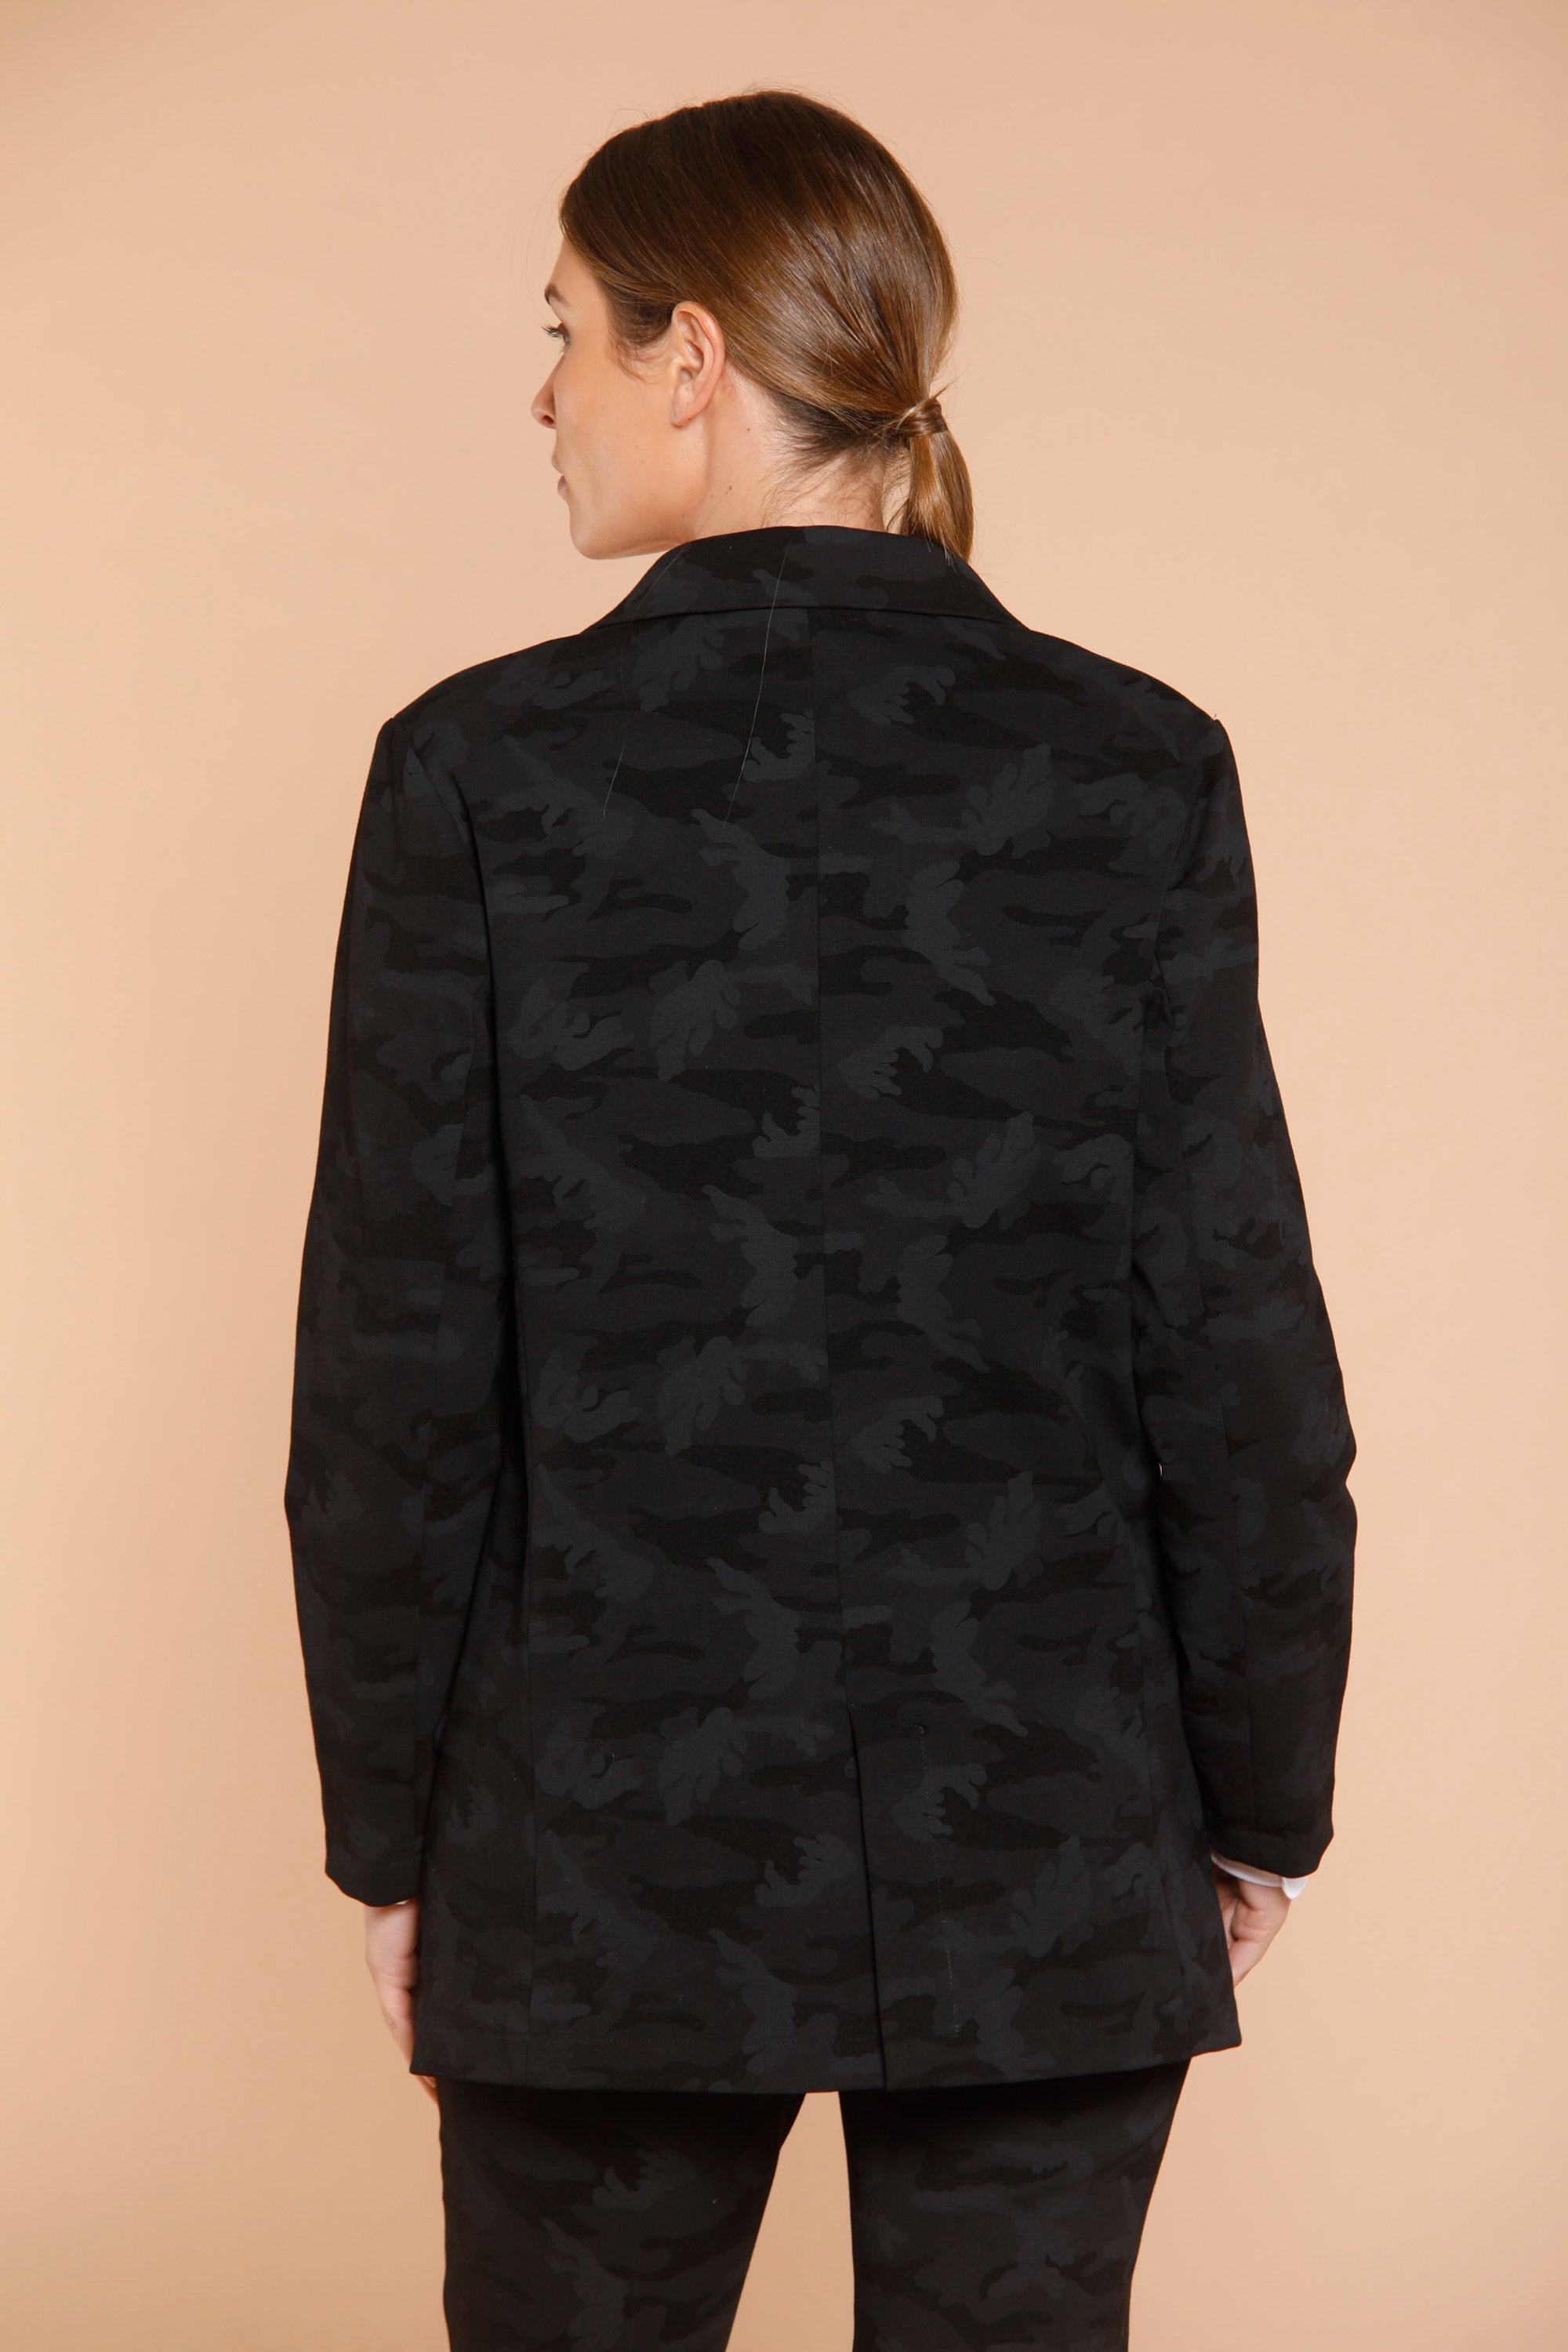 Image 5 de veste femme en jersey noir avec motif pattern modèle Letizia de Mason's